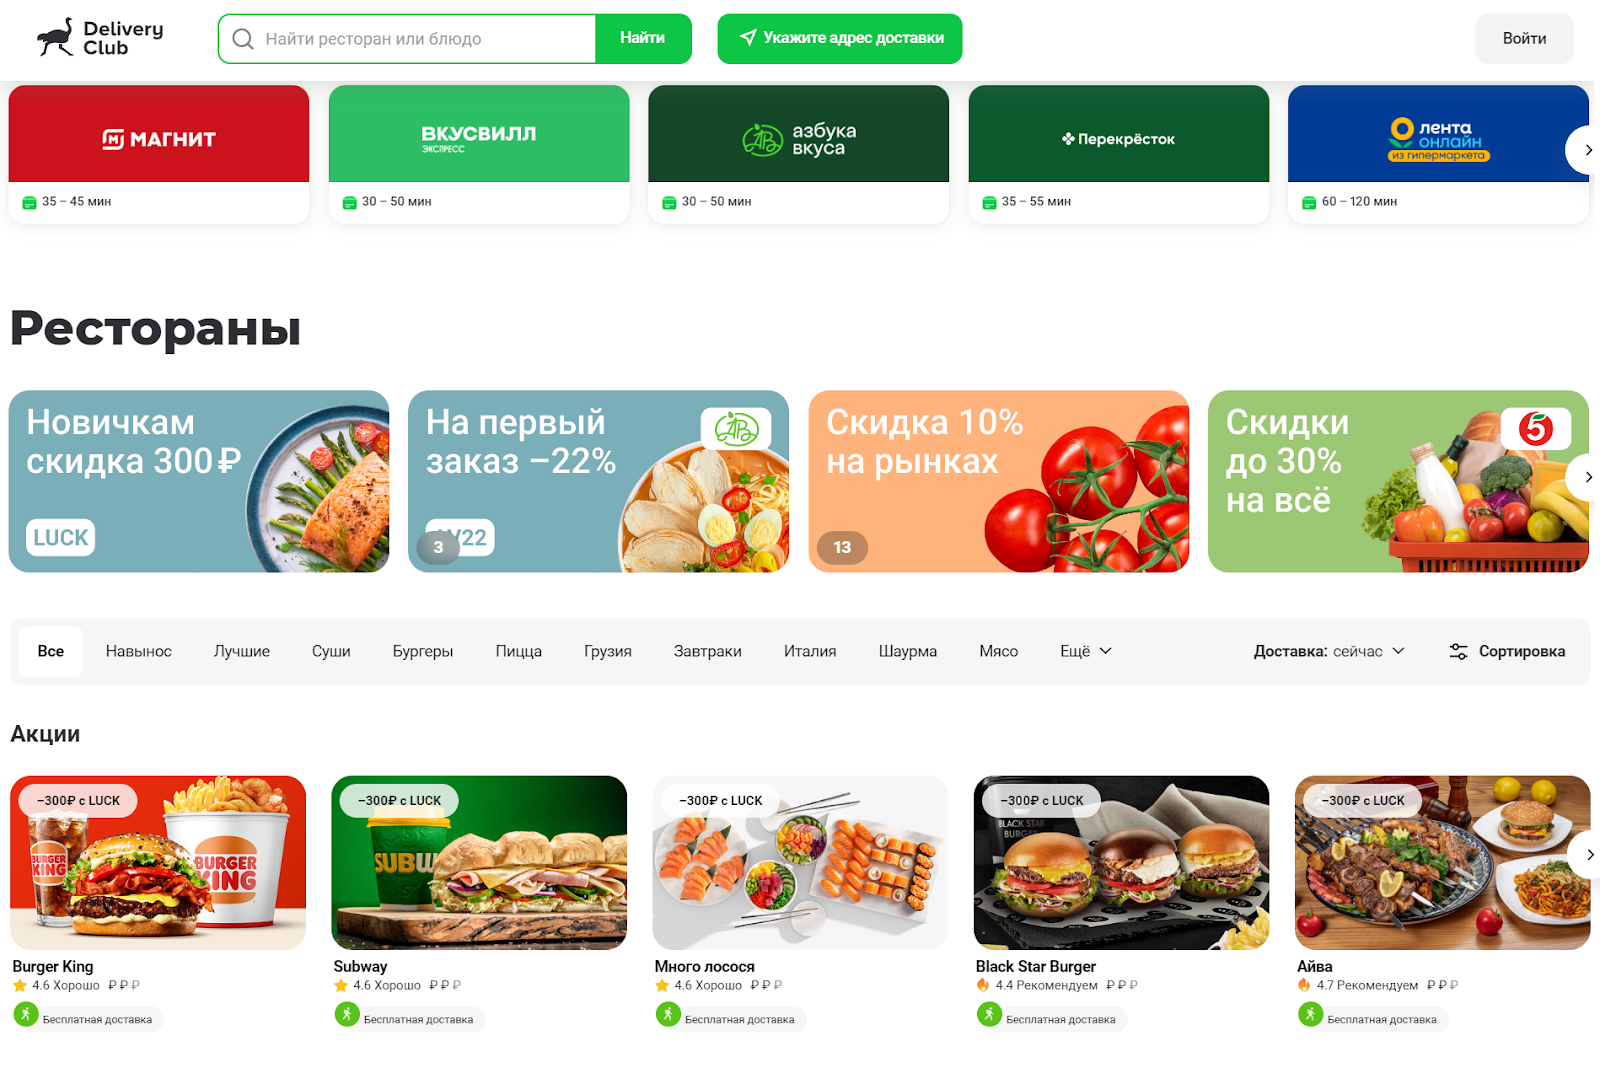 Скриншот сайта доставки еды — фирменные яркие цвета, формы